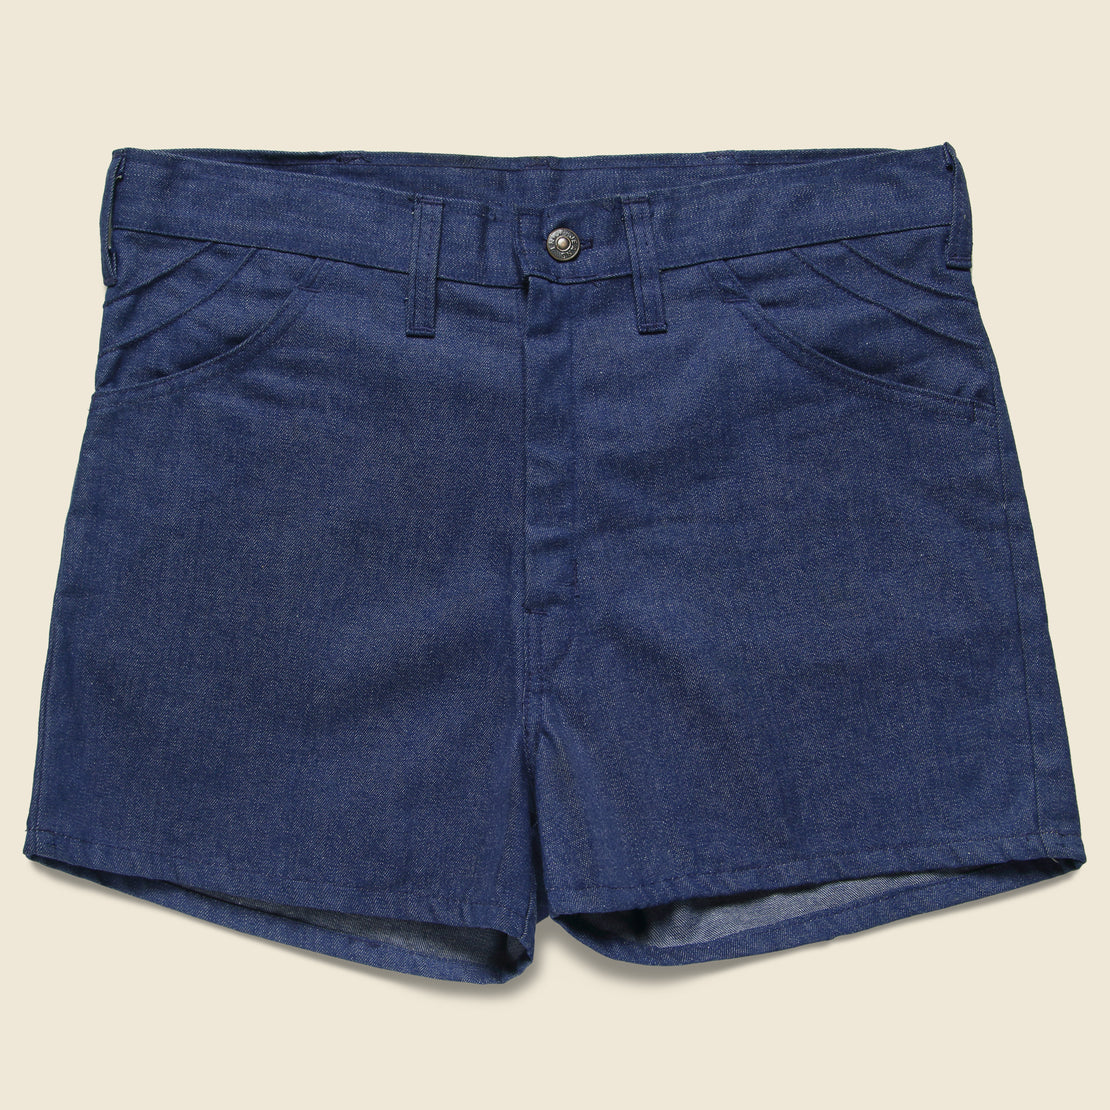 Vintage Denim Shorts - Indigo